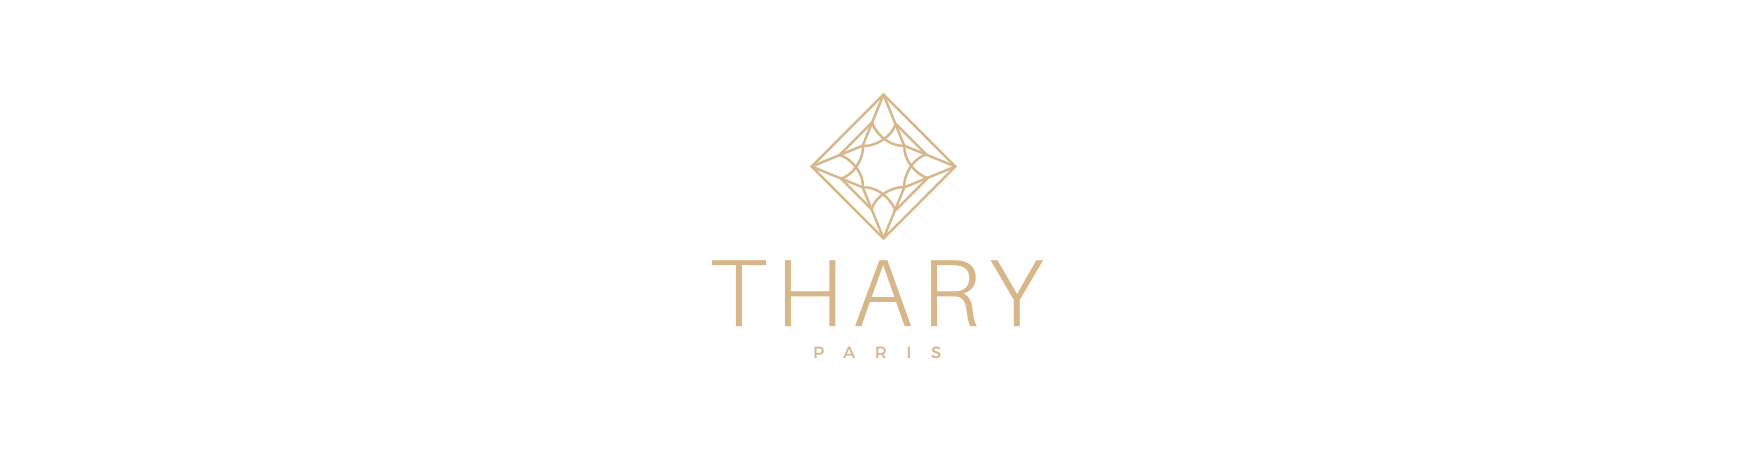 Thary Paris